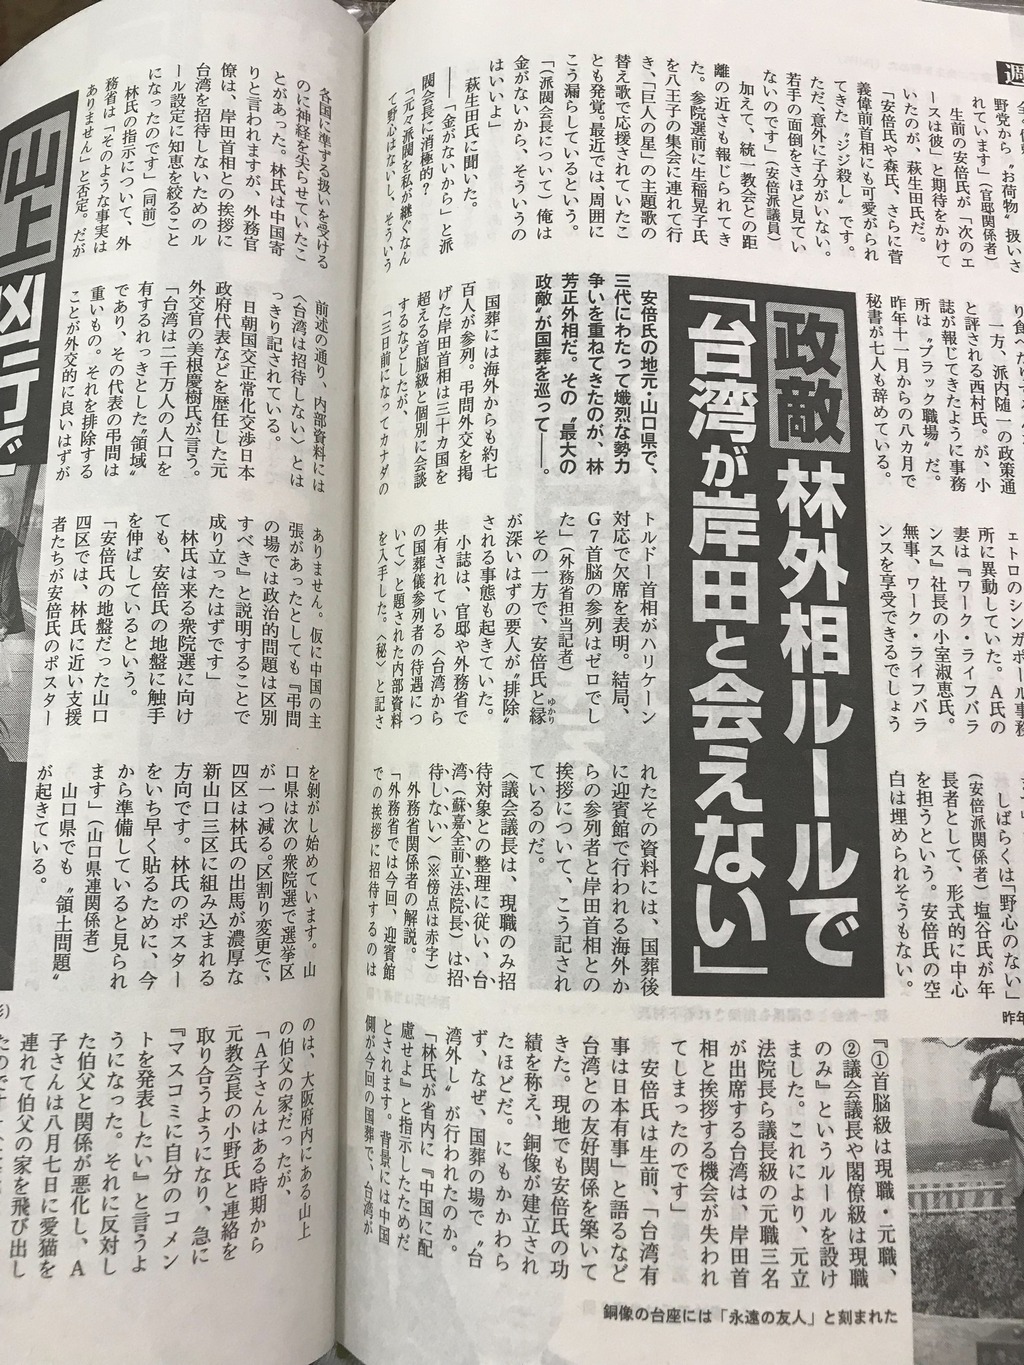 週刊文春報導揭發了存在排除台灣進迎賓館跟岸田見面的「林芳正原則」 圖：攝自週刊文春